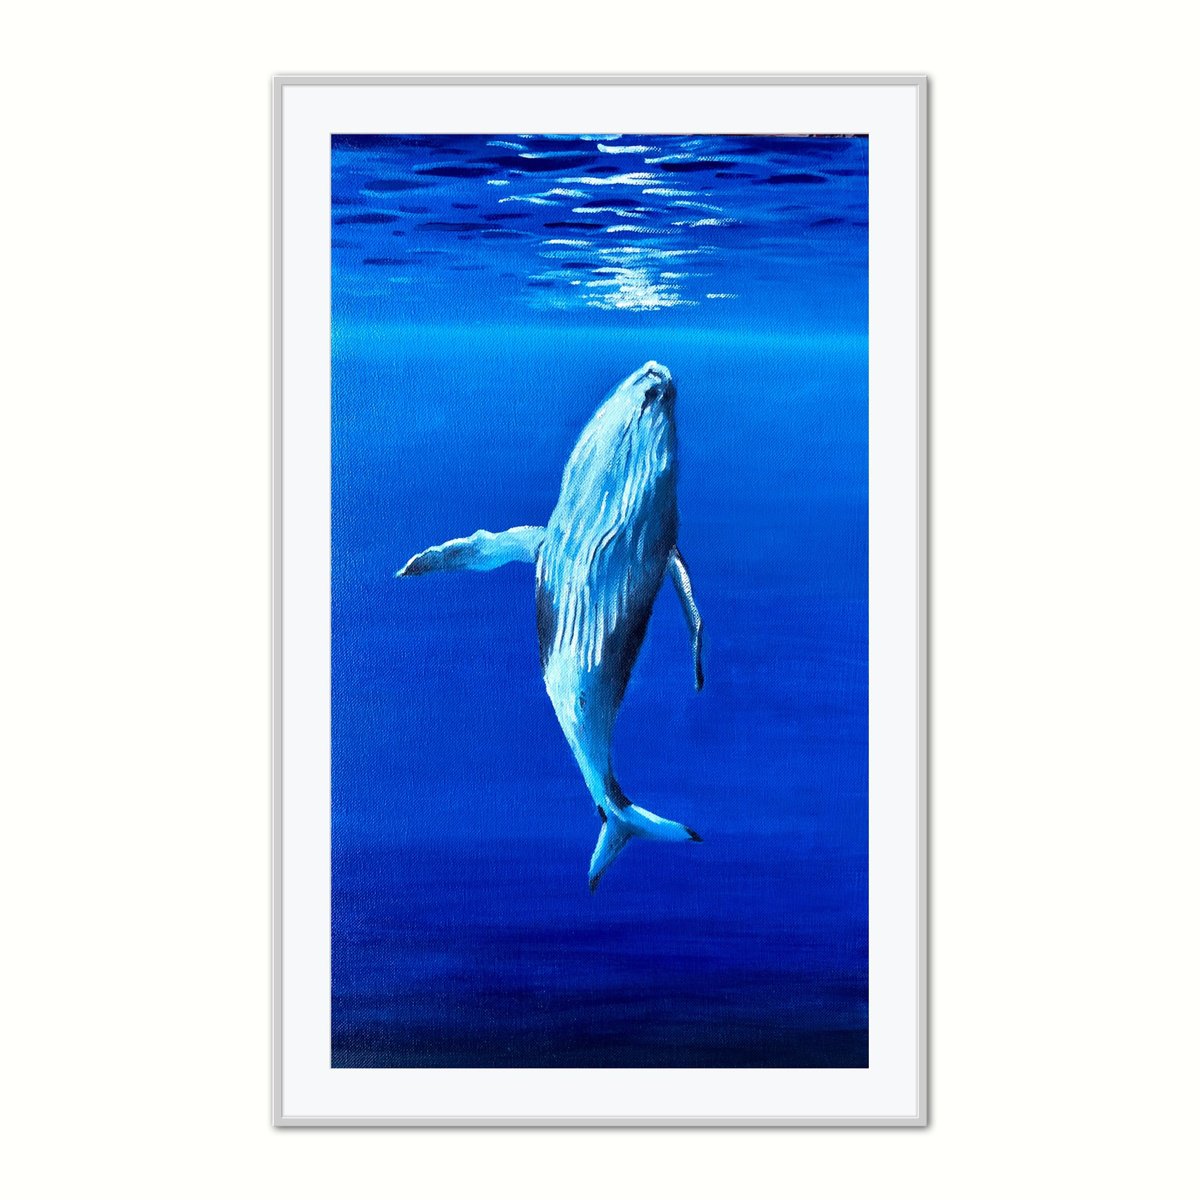 Whale in blue ocean by Volodymyr Smoliak